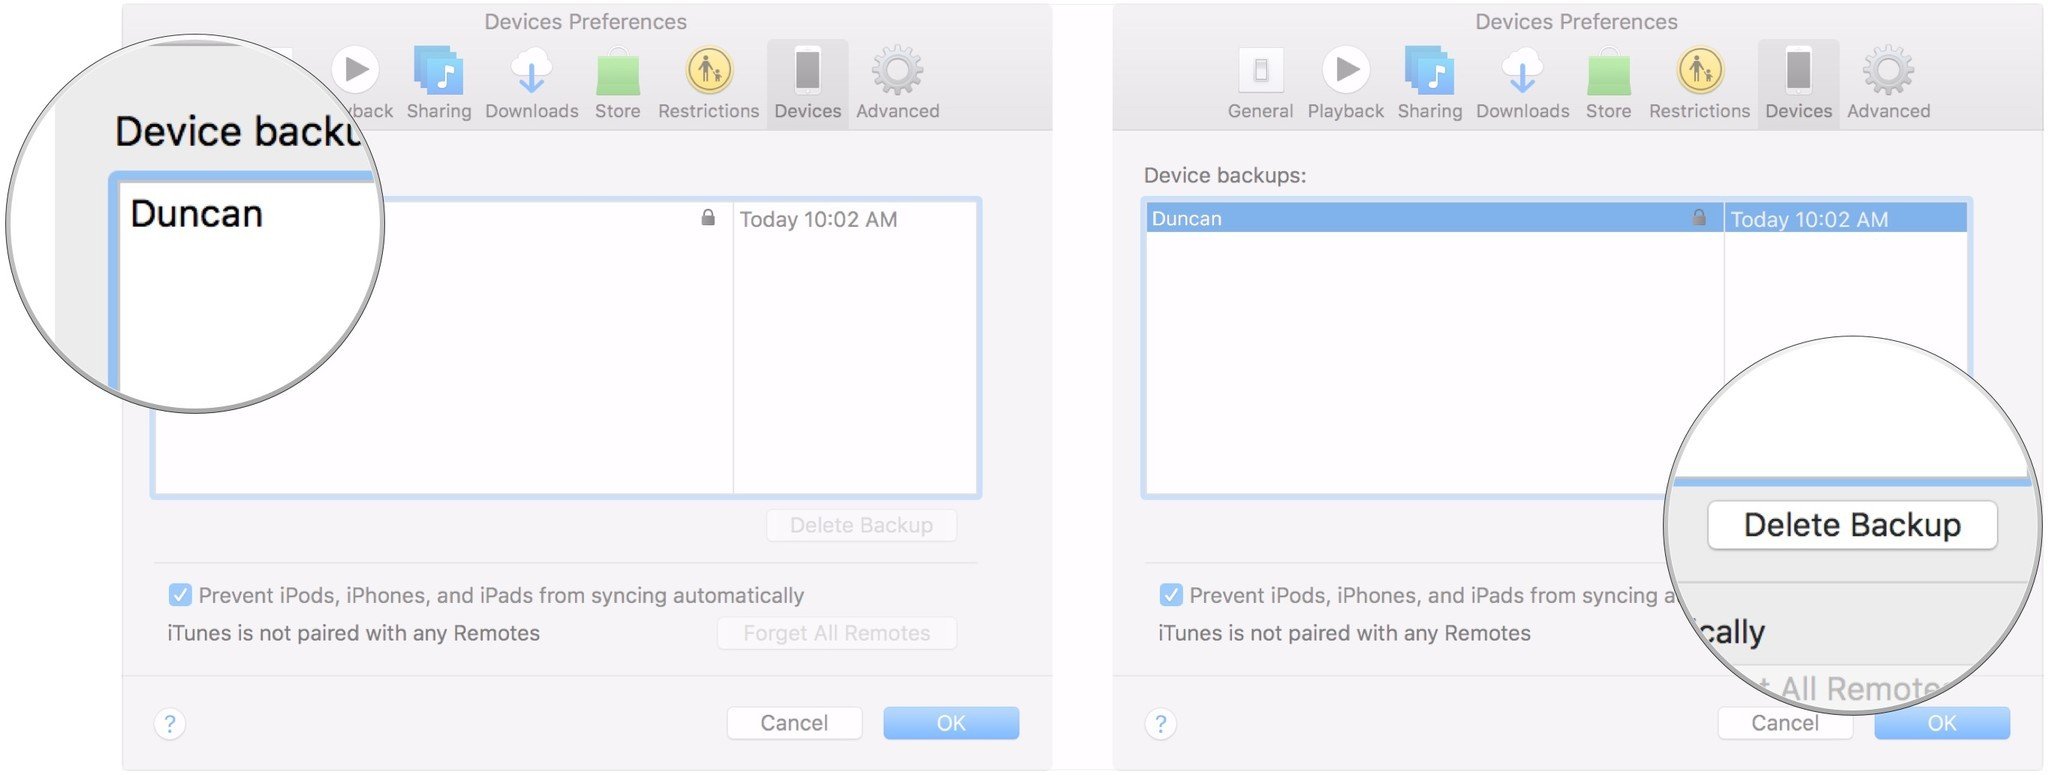 Удалить резервную копию iPhone в macOS Mojave, показывая, как щелкнуть резервную копию, которую вы хотите удалить, и щелкнуть Удалить резервную копию